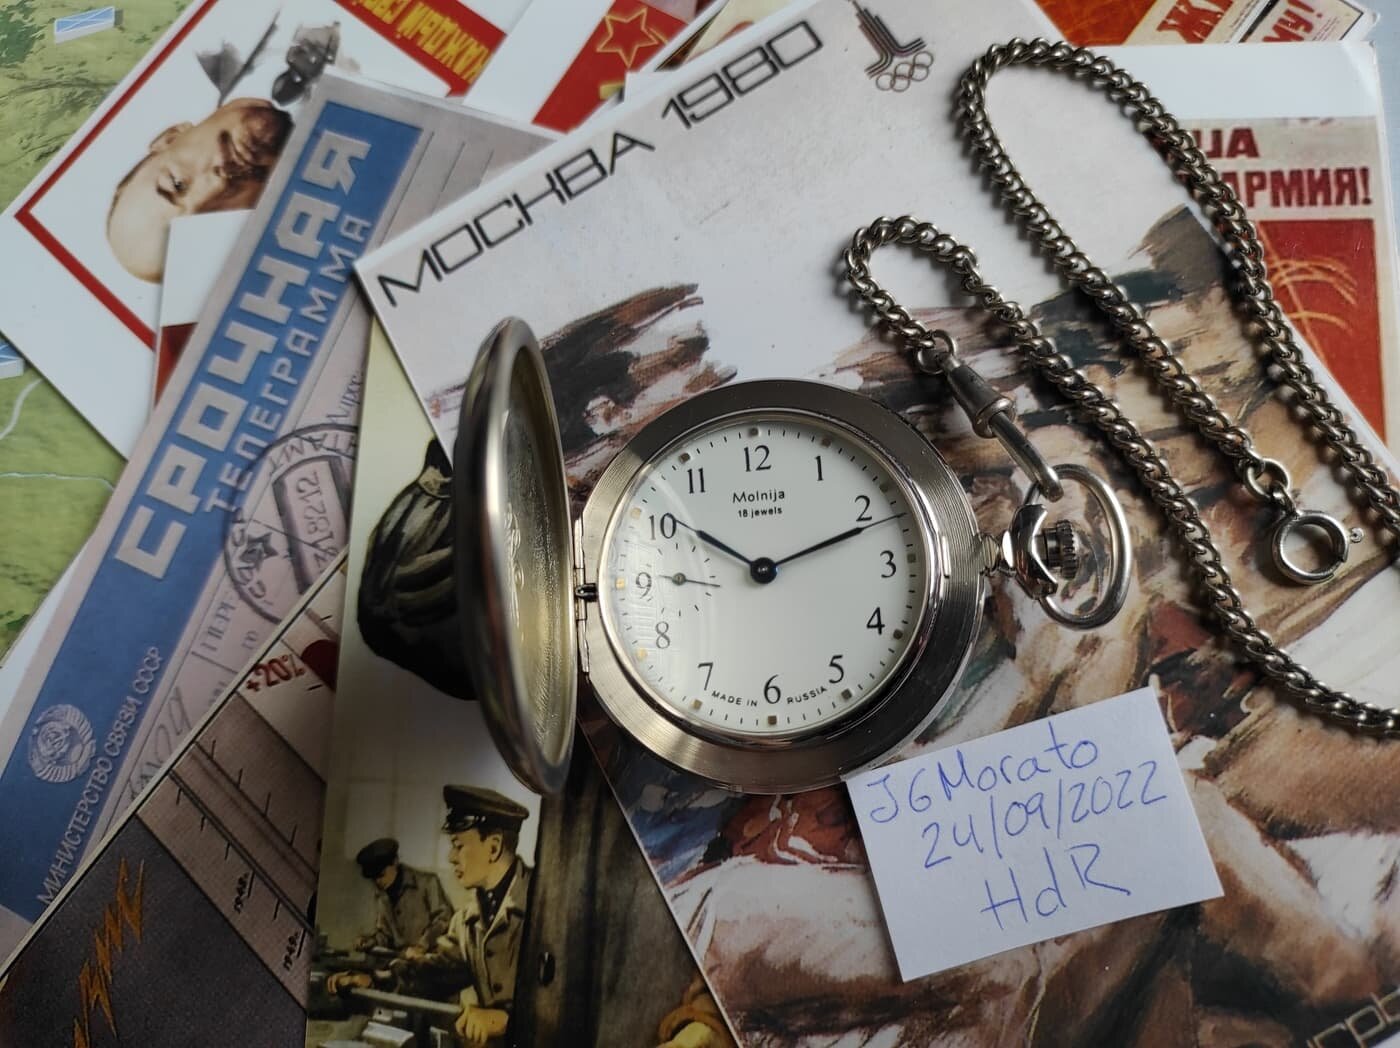 ruso de bolsillo Molnija - Mercado de relojes - HdR